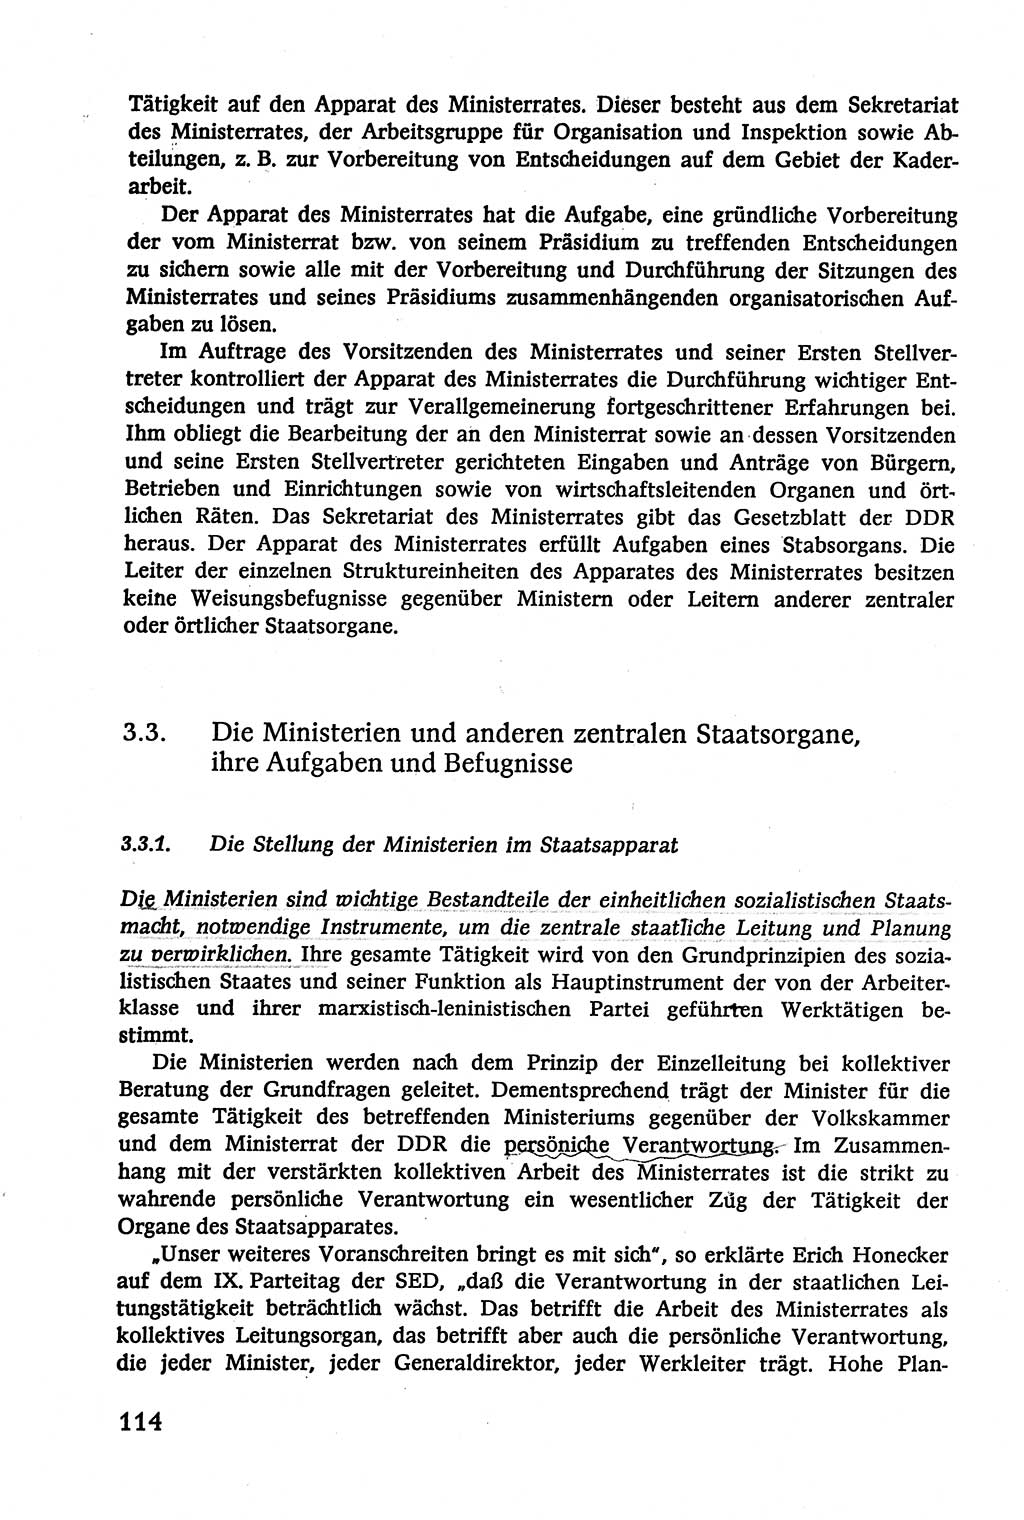 Verwaltungsrecht [Deutsche Demokratische Republik (DDR)], Lehrbuch 1979, Seite 114 (Verw.-R. DDR Lb. 1979, S. 114)